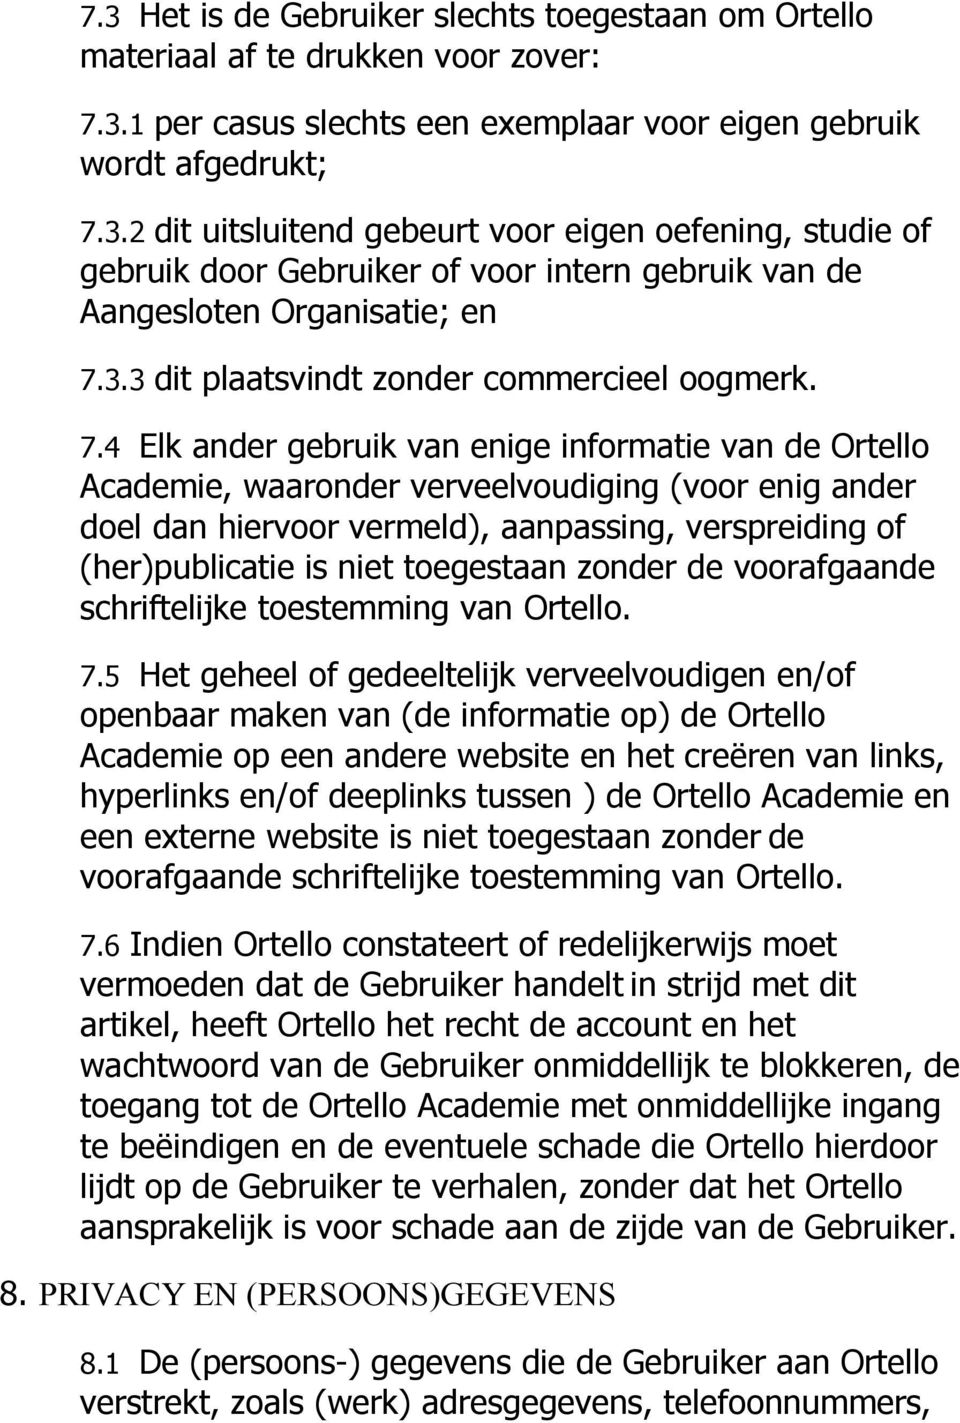 4 Elk ander gebruik van enige informatie van de Ortello Academie, waaronder verveelvoudiging (voor enig ander doel dan hiervoor vermeld), aanpassing, verspreiding of (her)publicatie is niet